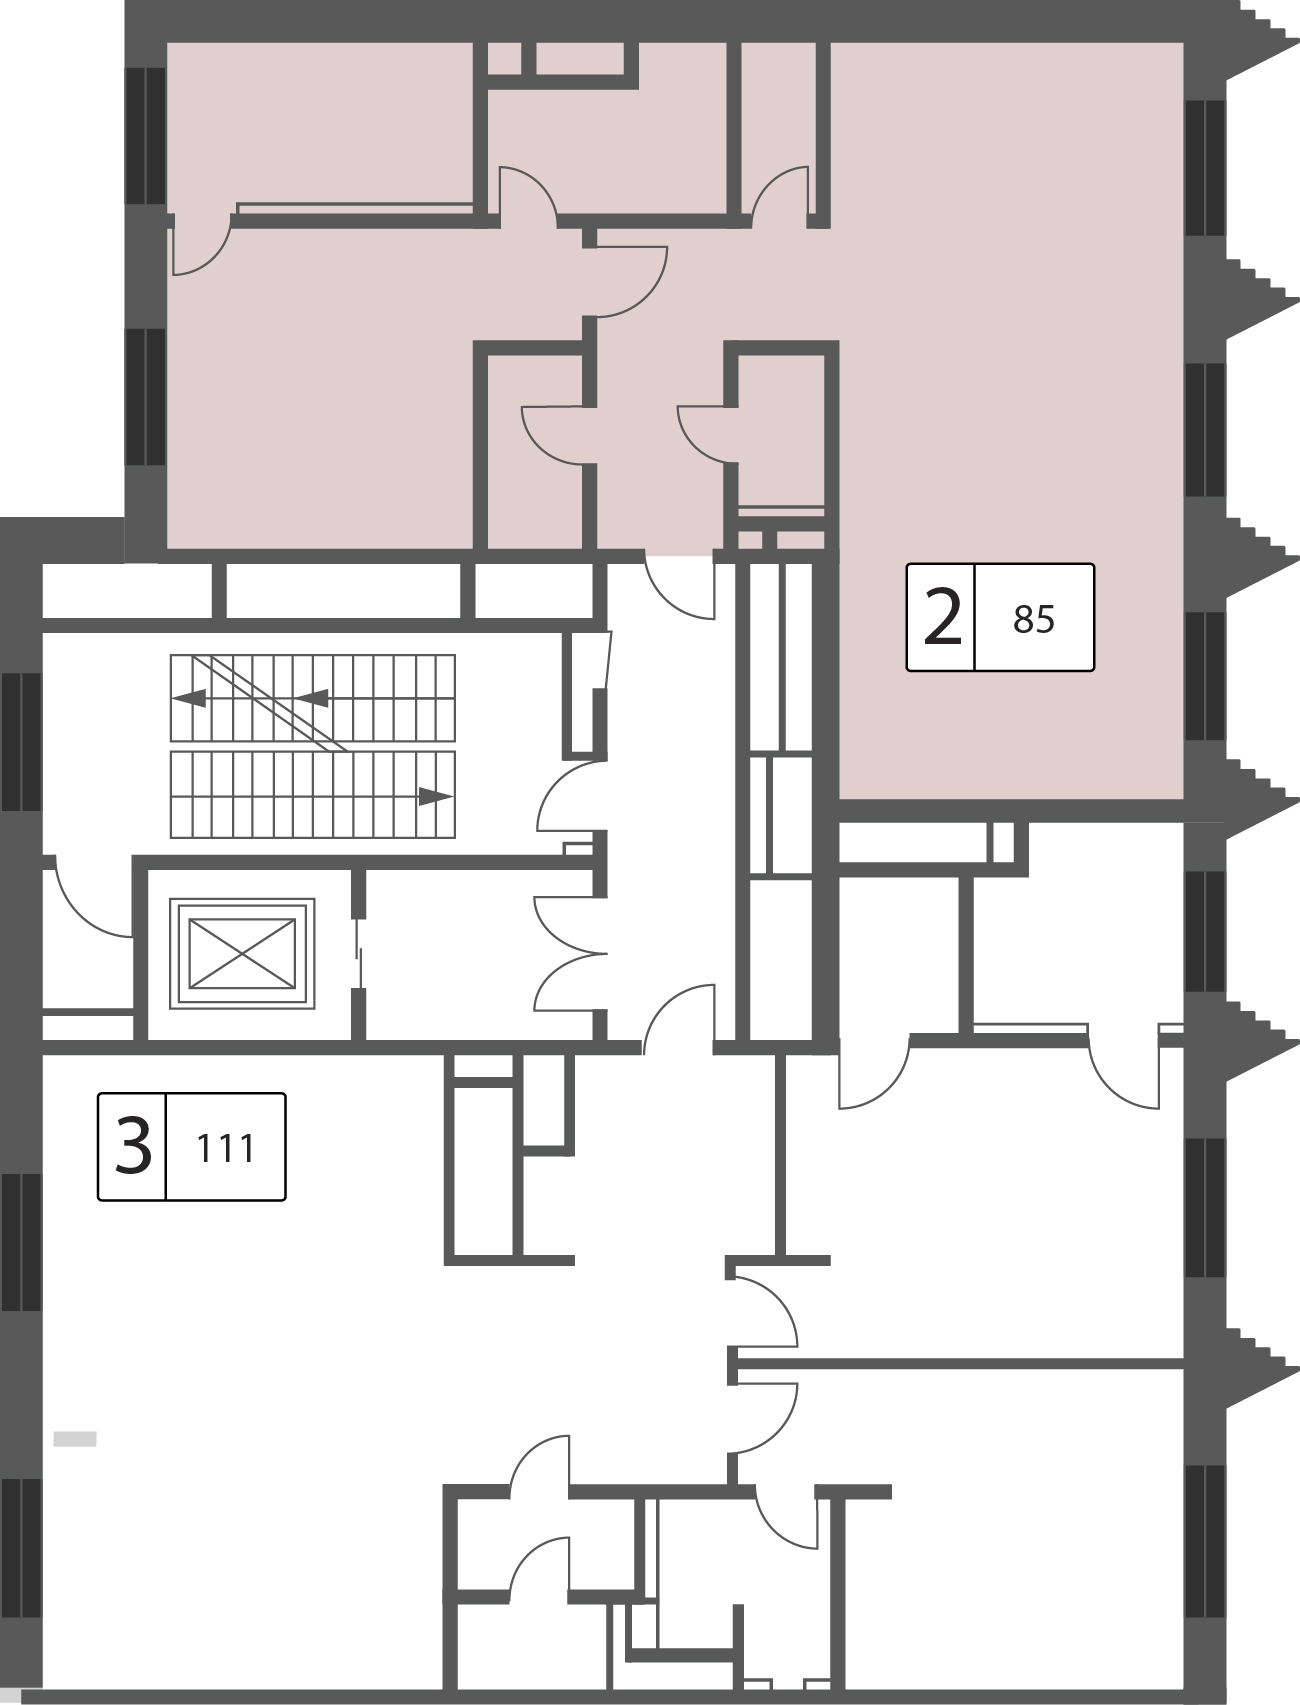 Двухкомнатная квартира 83.3м², 4 этаж, Корп. 3 (Порода) ЖК «Большая Дмитровка IX»